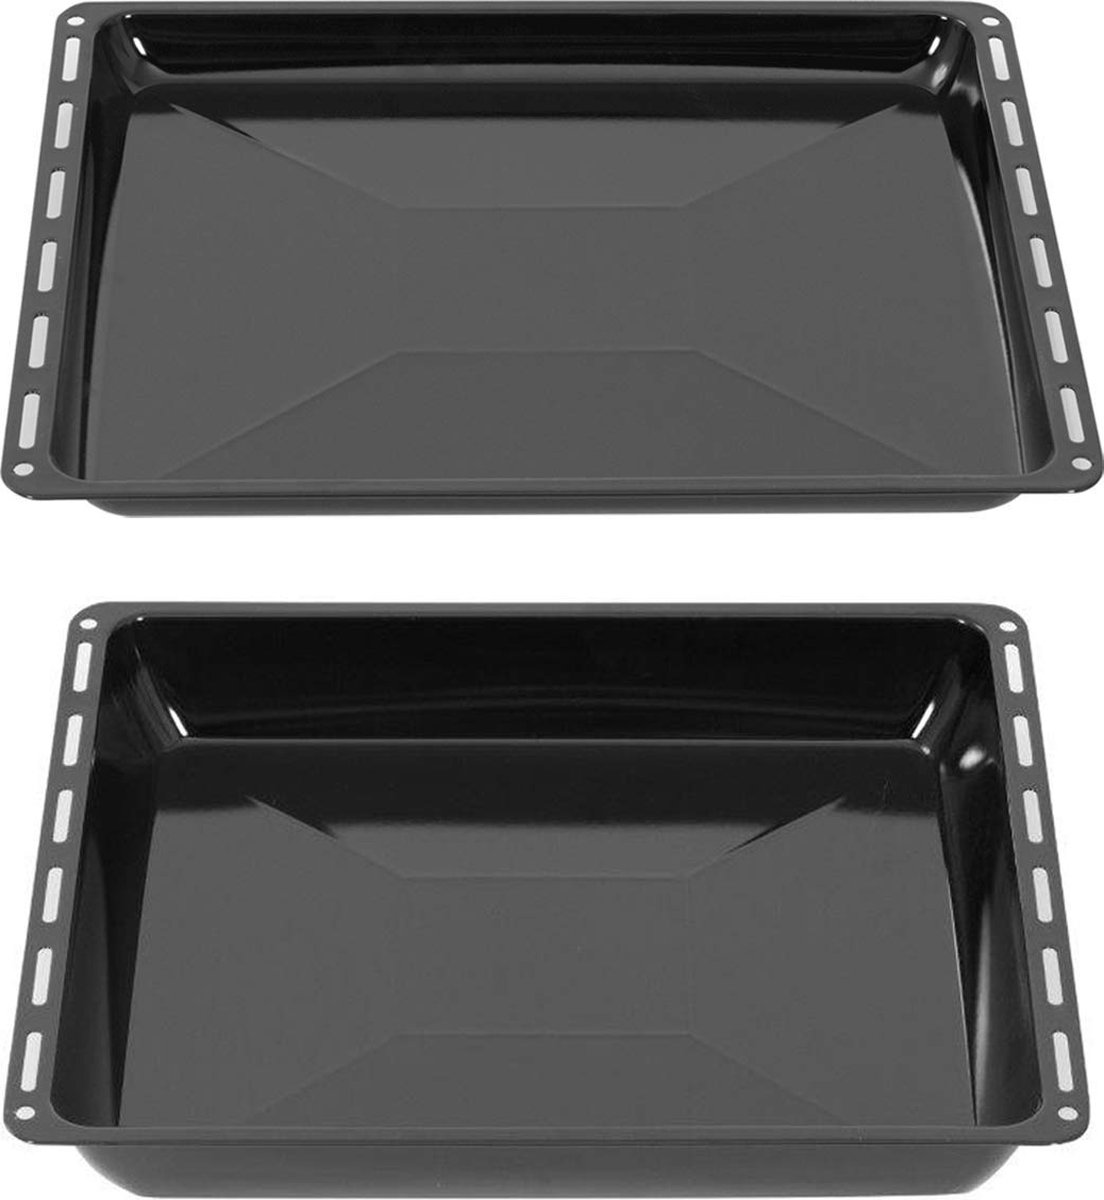 ICQN Oven Bakplaat Set - 2 stuks - 445x375x25 mm en 445x375x50 mm - Geëmailleerd - ICQN